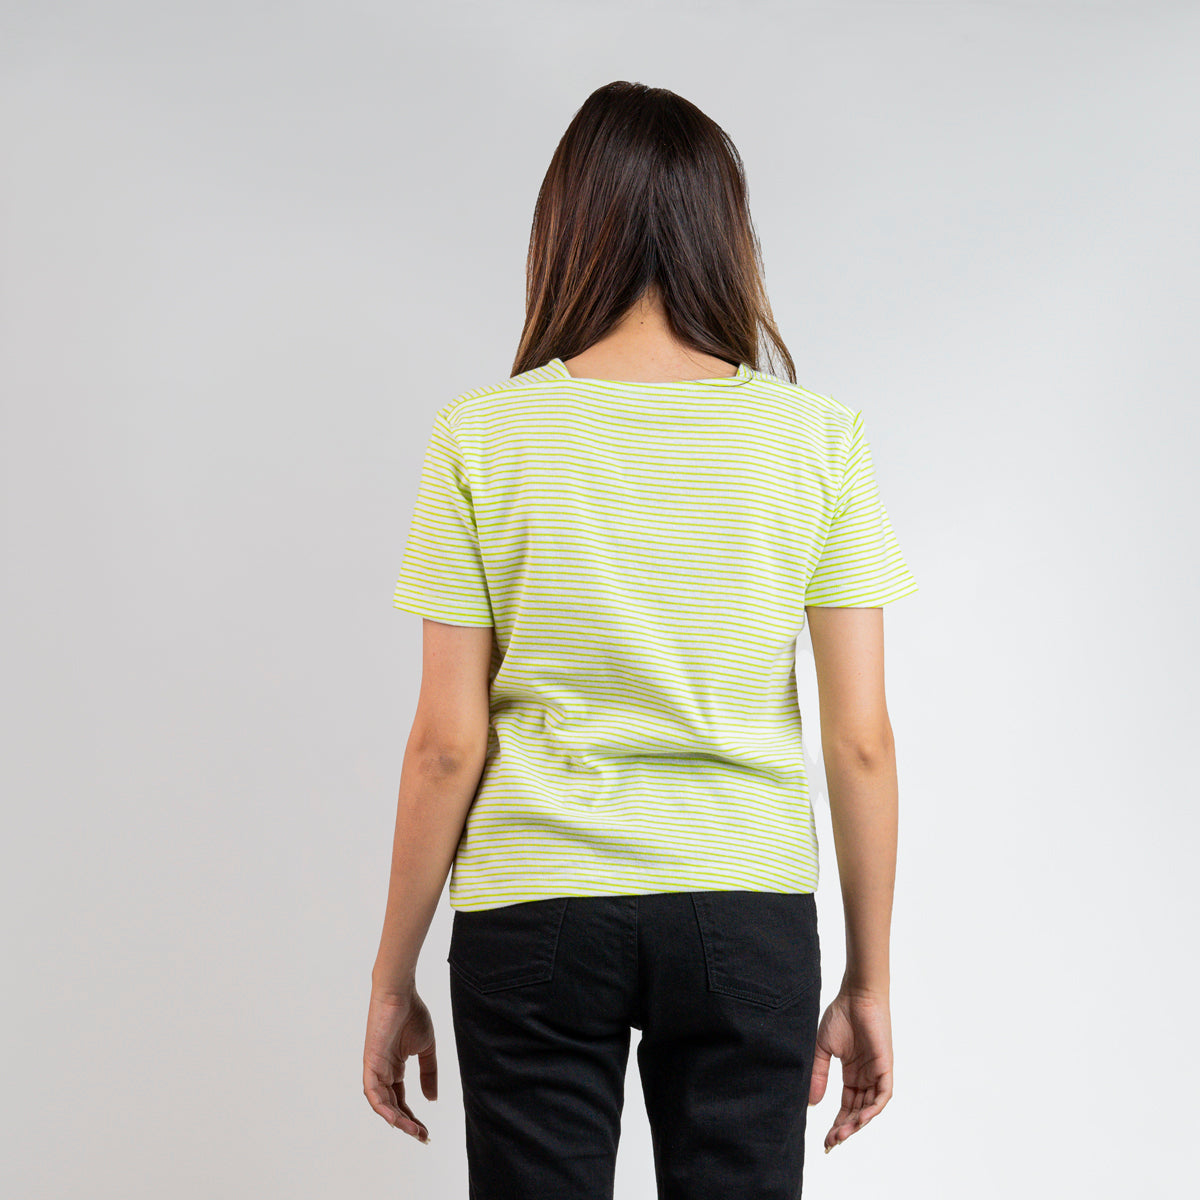 Interlock green & white T-Shirt